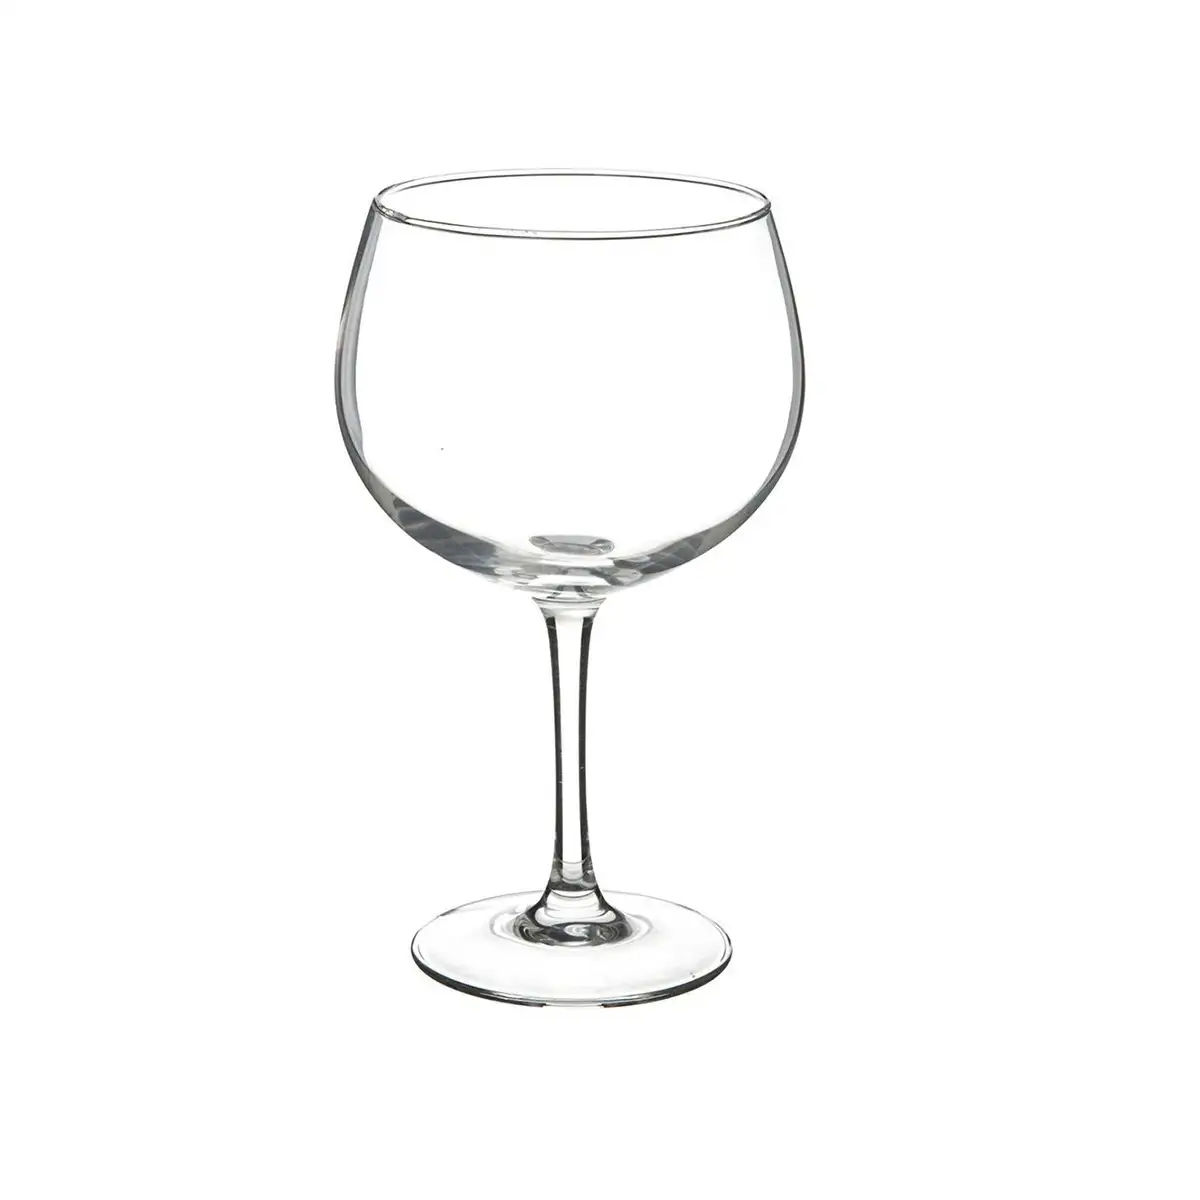 Set de verres pour gin tonic secret de gourmet verre transparent o 11 5 x 19 5 cm 70 cl _2852. DIAYTAR SENEGAL - L'Art de Vivre le Shopping Authentique. Découvrez notre boutique en ligne et trouvez des produits qui incarnent la passion et le savoir-faire du Sénégal.